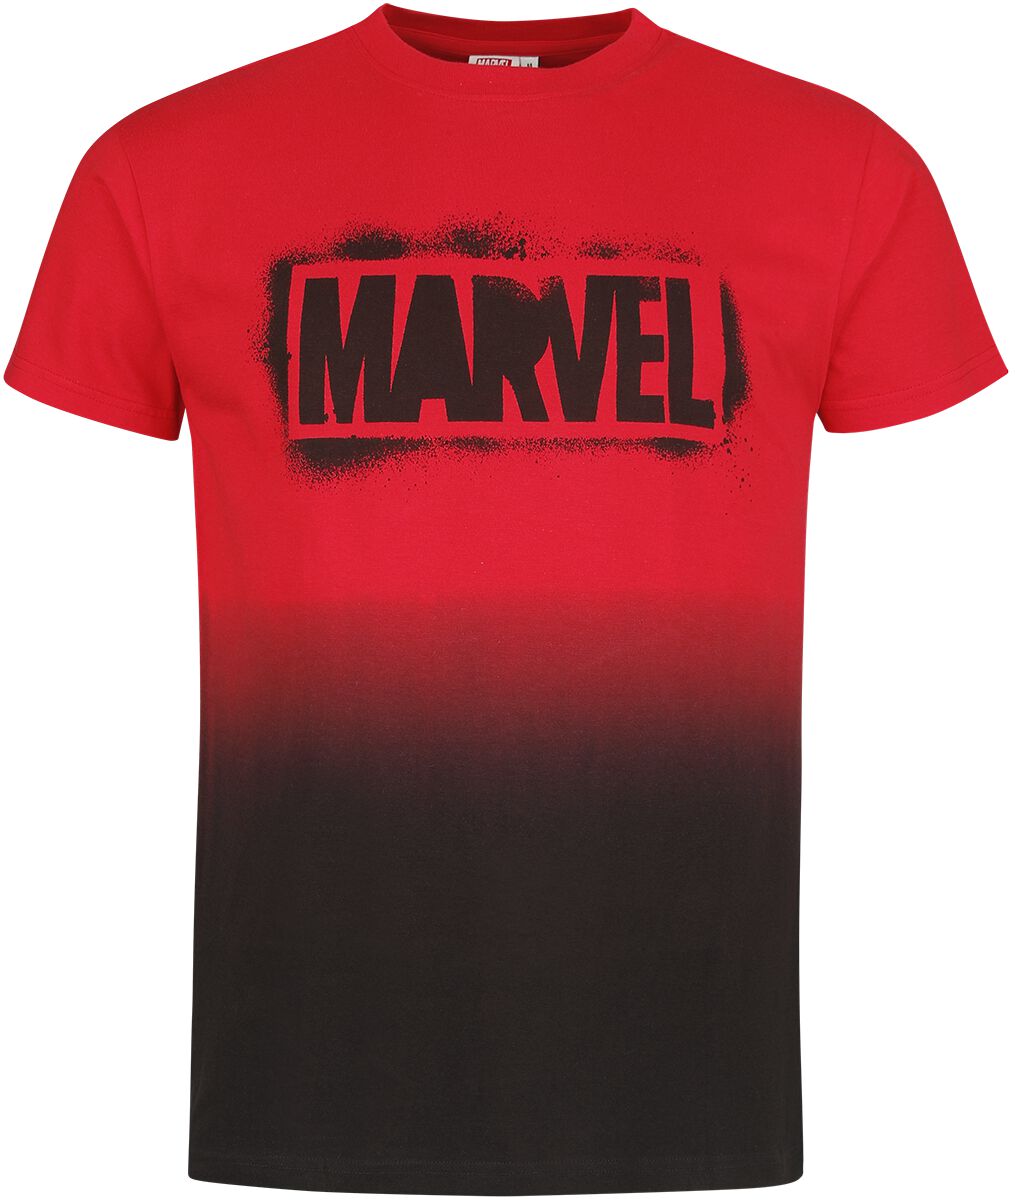 Marvel - Marvel T-Shirt - Logo - S bis XXL - für Männer - Größe M - multicolor  - EMP exklusives Merchandise! von Marvel